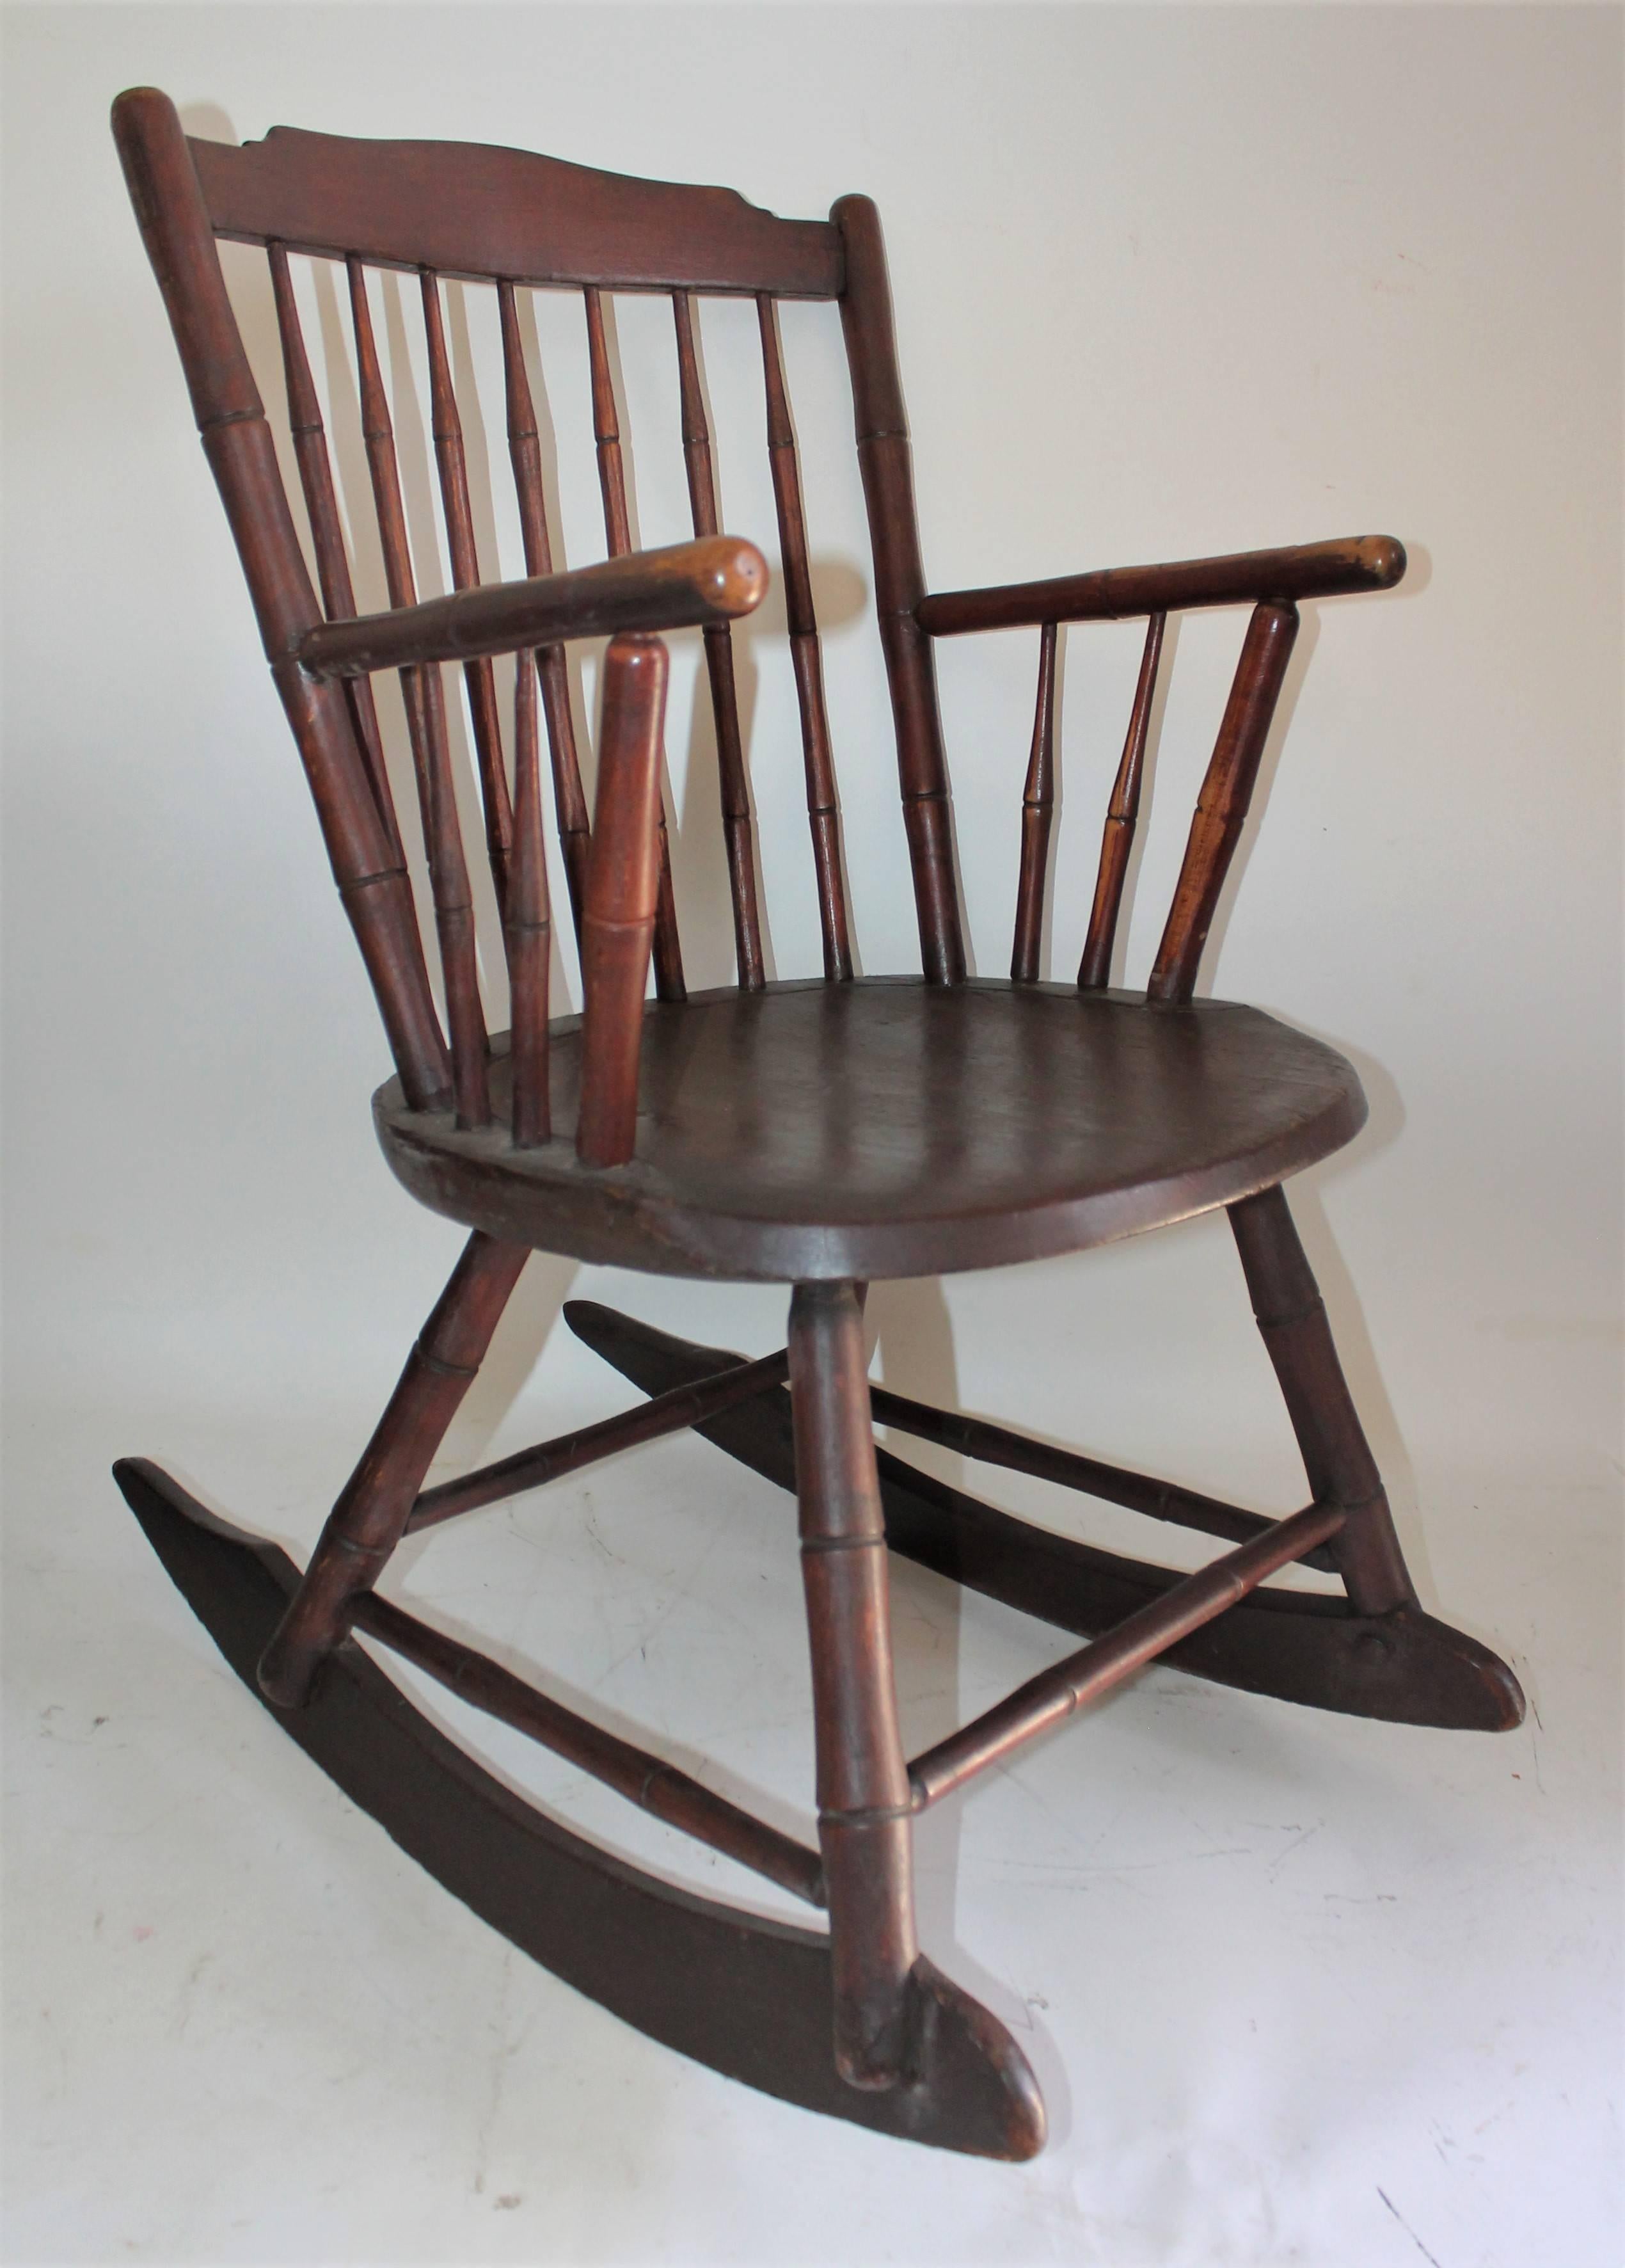 Fauteuil à bascule Windsor du 19e siècle en bon état. Il s'agit d'un fauteuil à bascule très robuste. Petites réparations anciennes. Il est doté d'une assise et d'un dossier larges. Ce rocking-chair a une magnifique patine d'ancienneté.